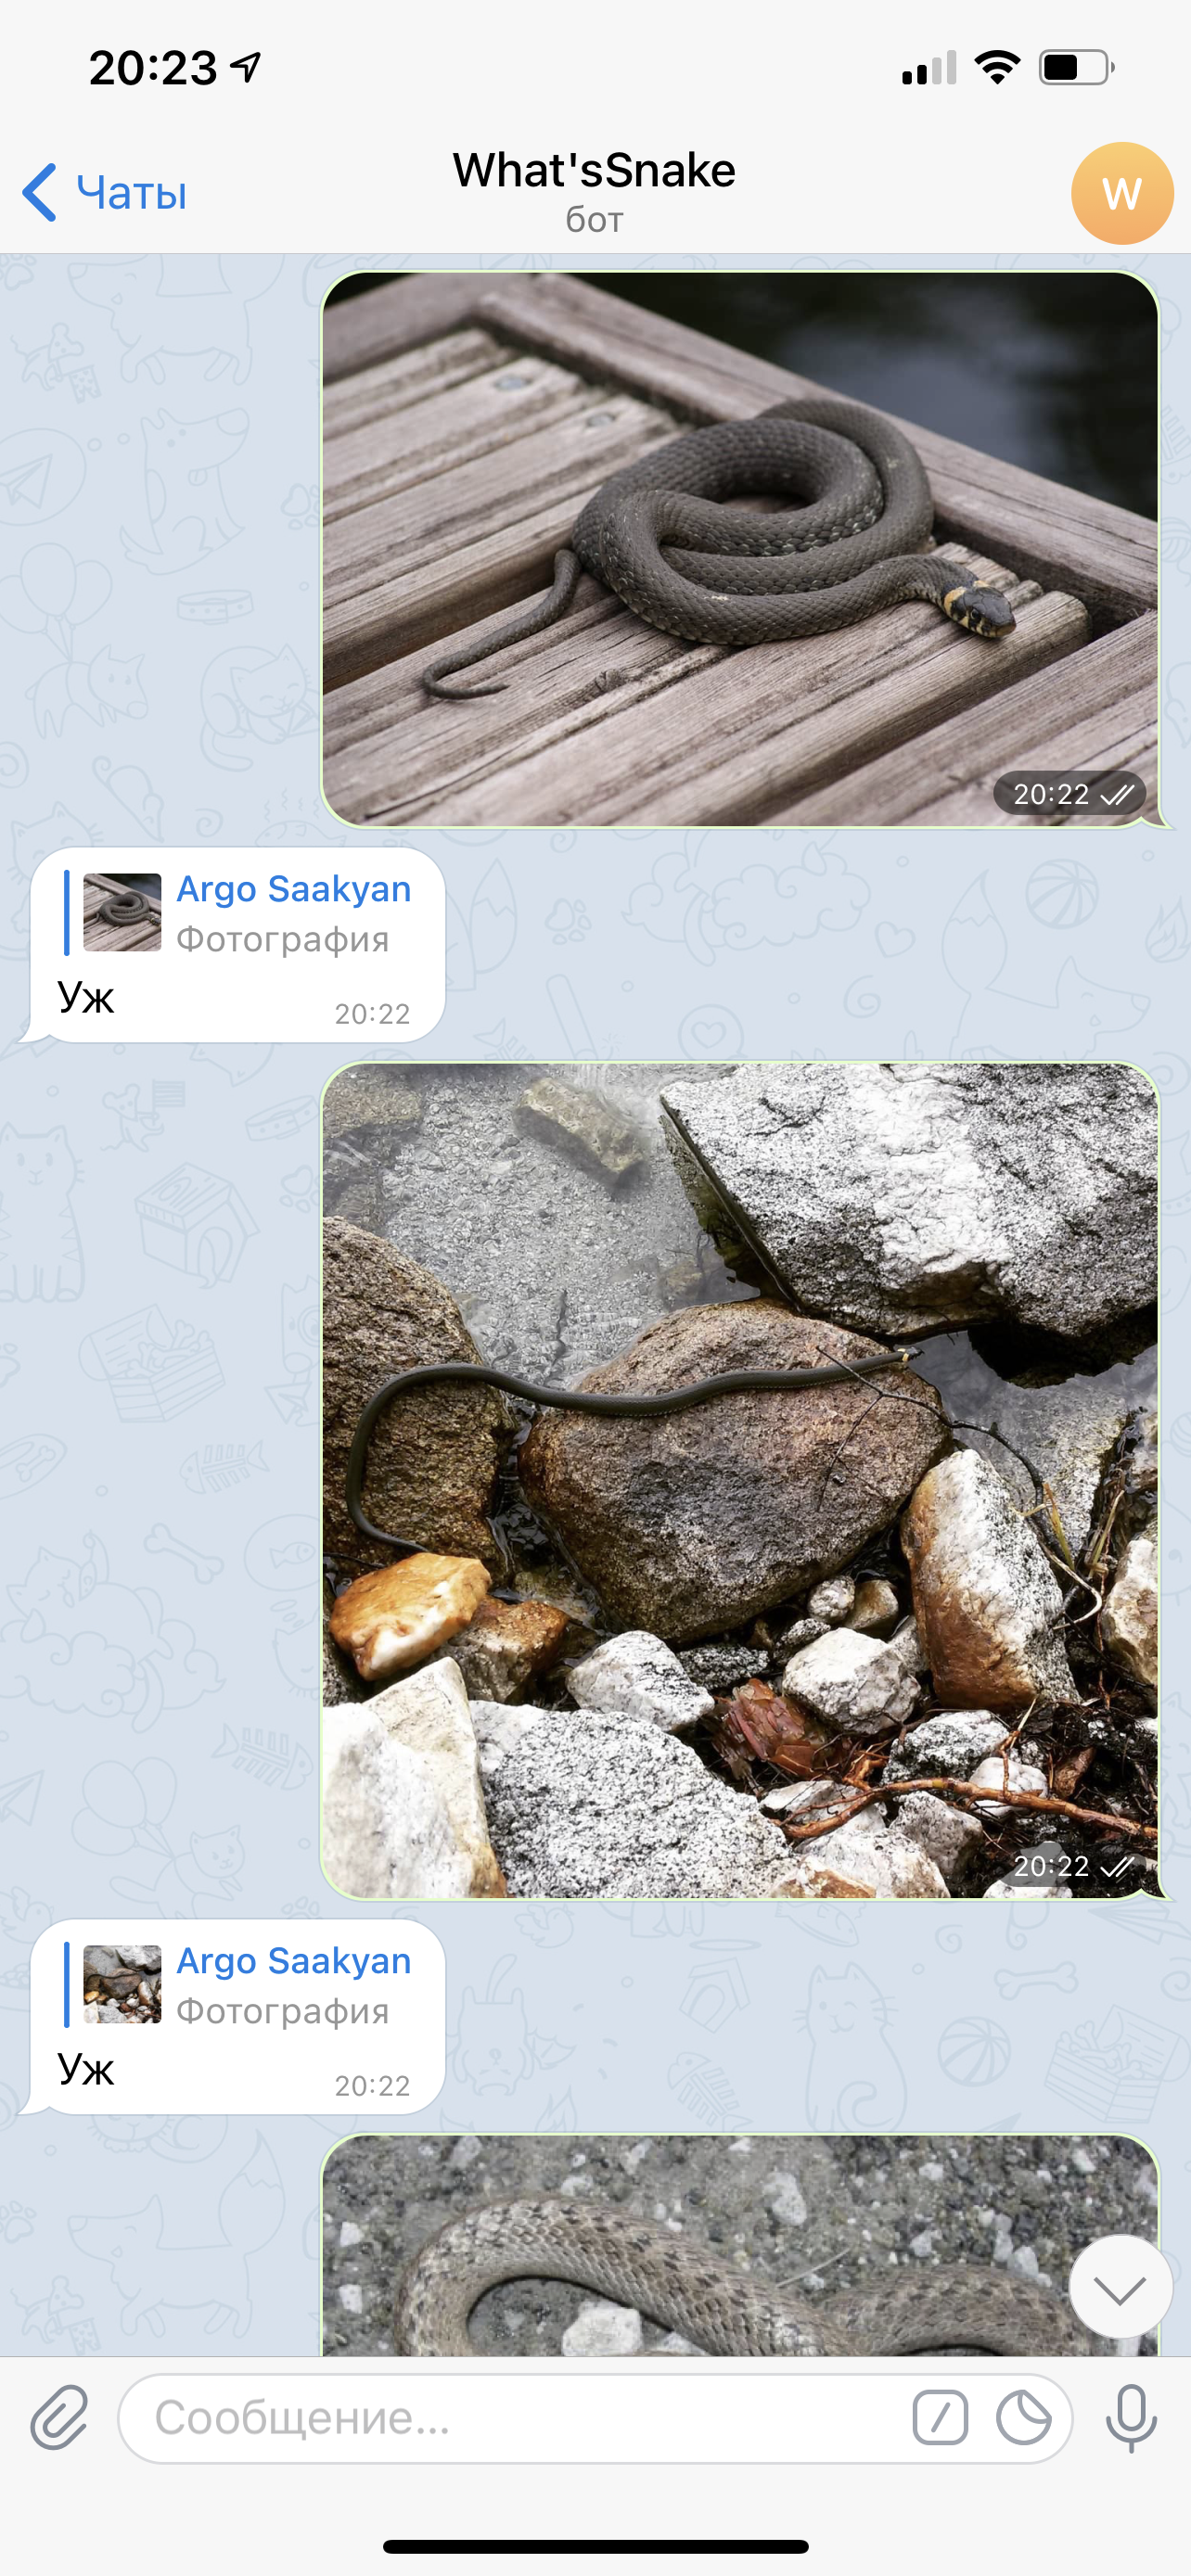 Так выглядит телеграм-бот, присылаешь фото змеи и получаешь в ответ ее название